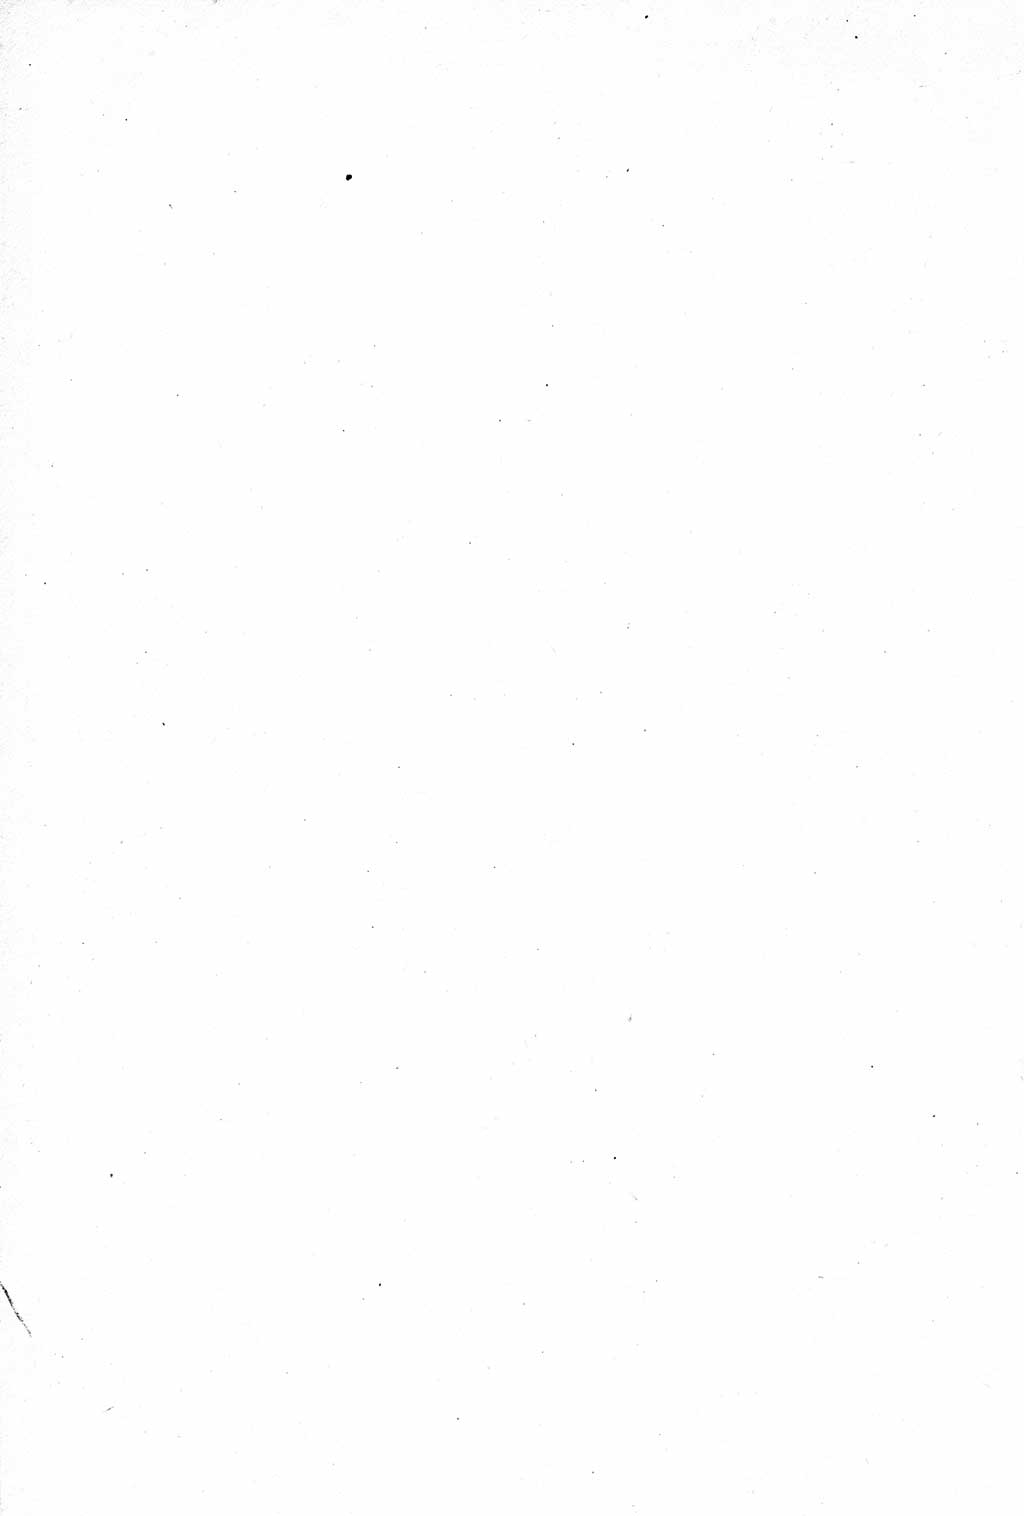 Geschichte der Kommunistischen Partei der Sowjetunion (KPdSU) [Sowjetische Besatzungszone (SBZ) Deutschlands] 1946, Seite 448 (Gesch. KPdSU SBZ Dtl. 1946, S. 448)